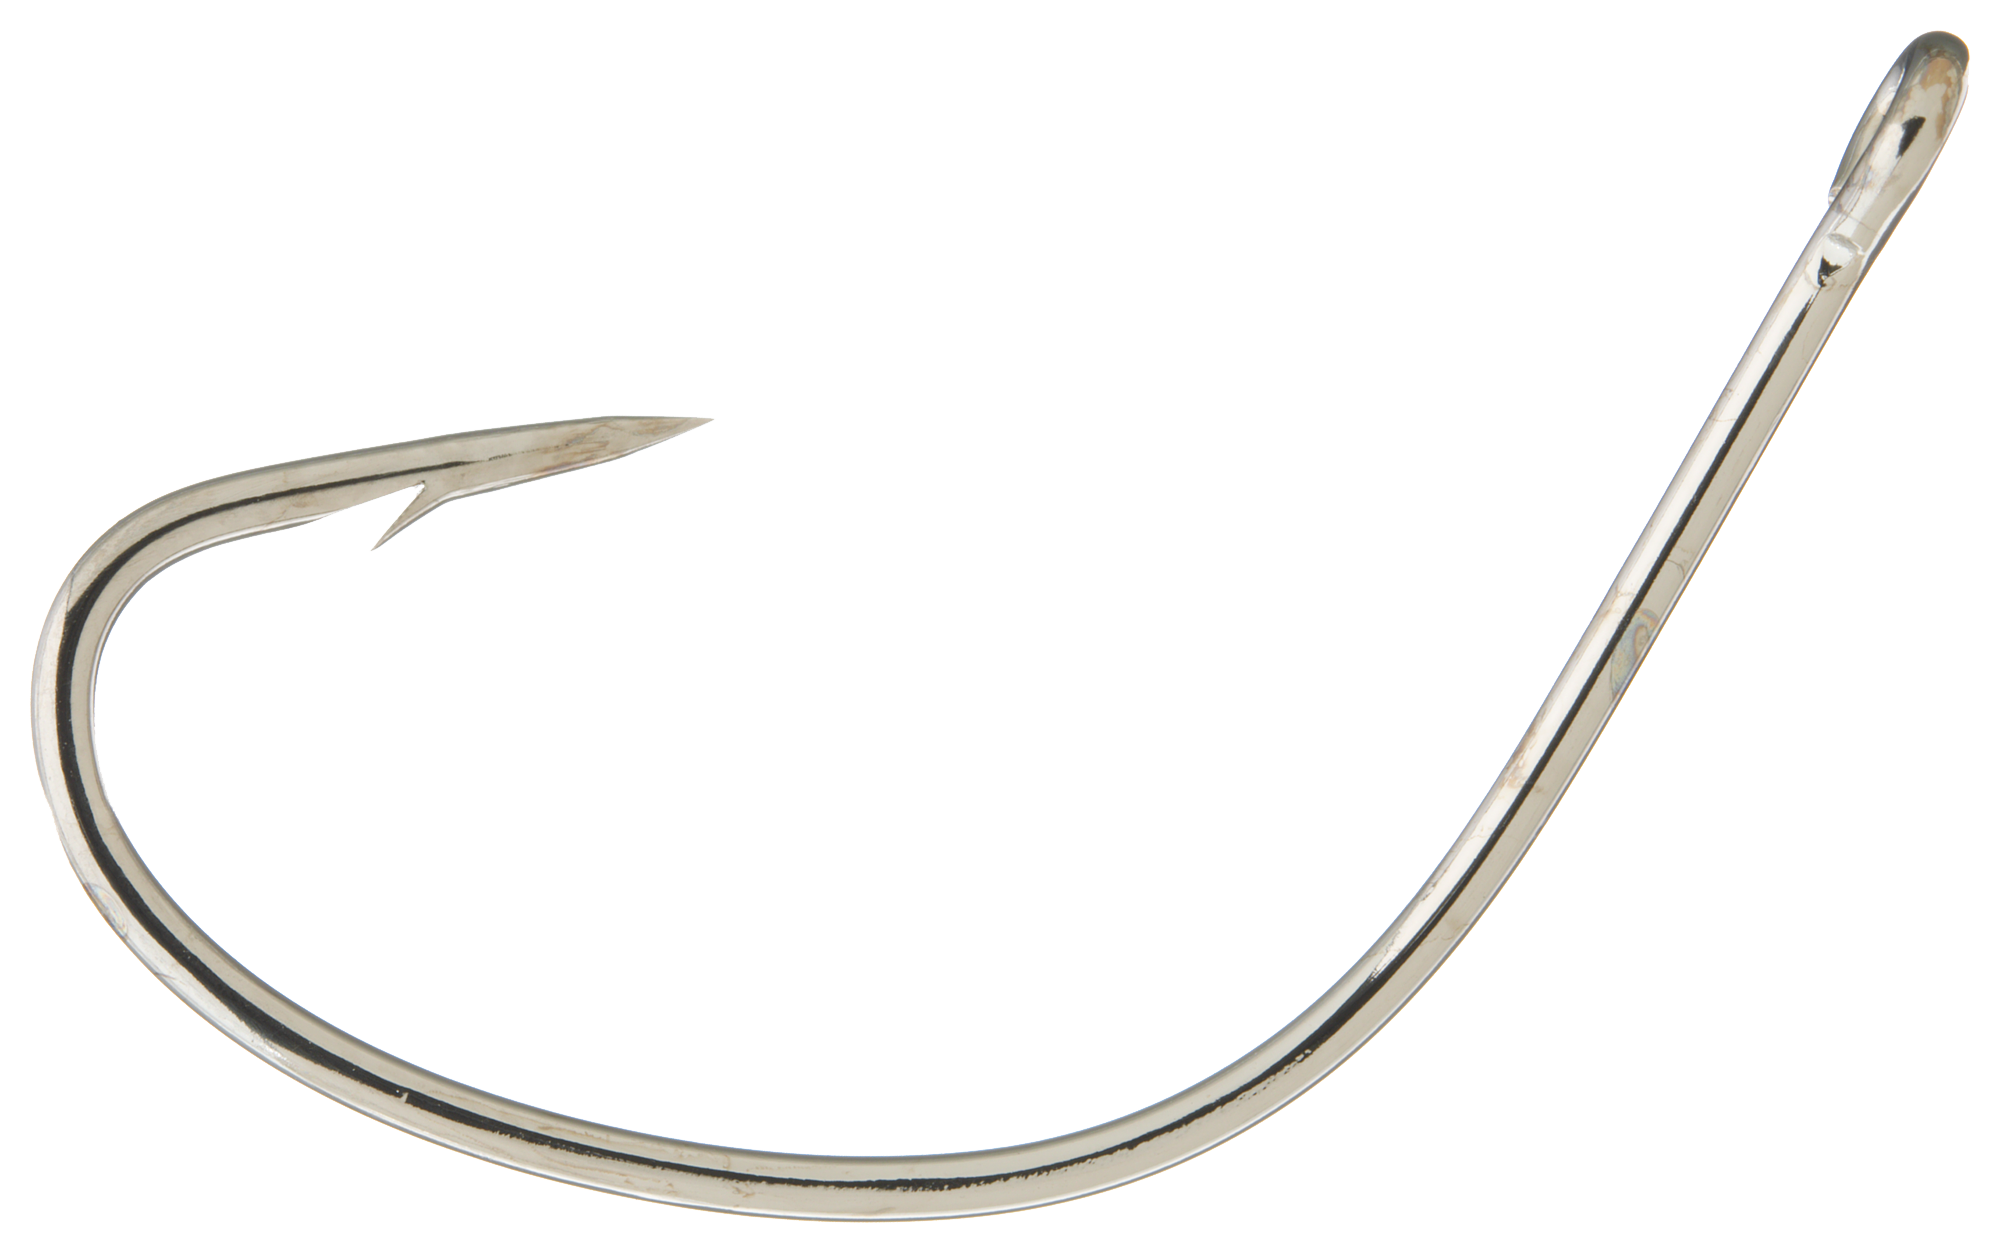 Eagle Claw Lazer Sharp L141 Kahle Hook